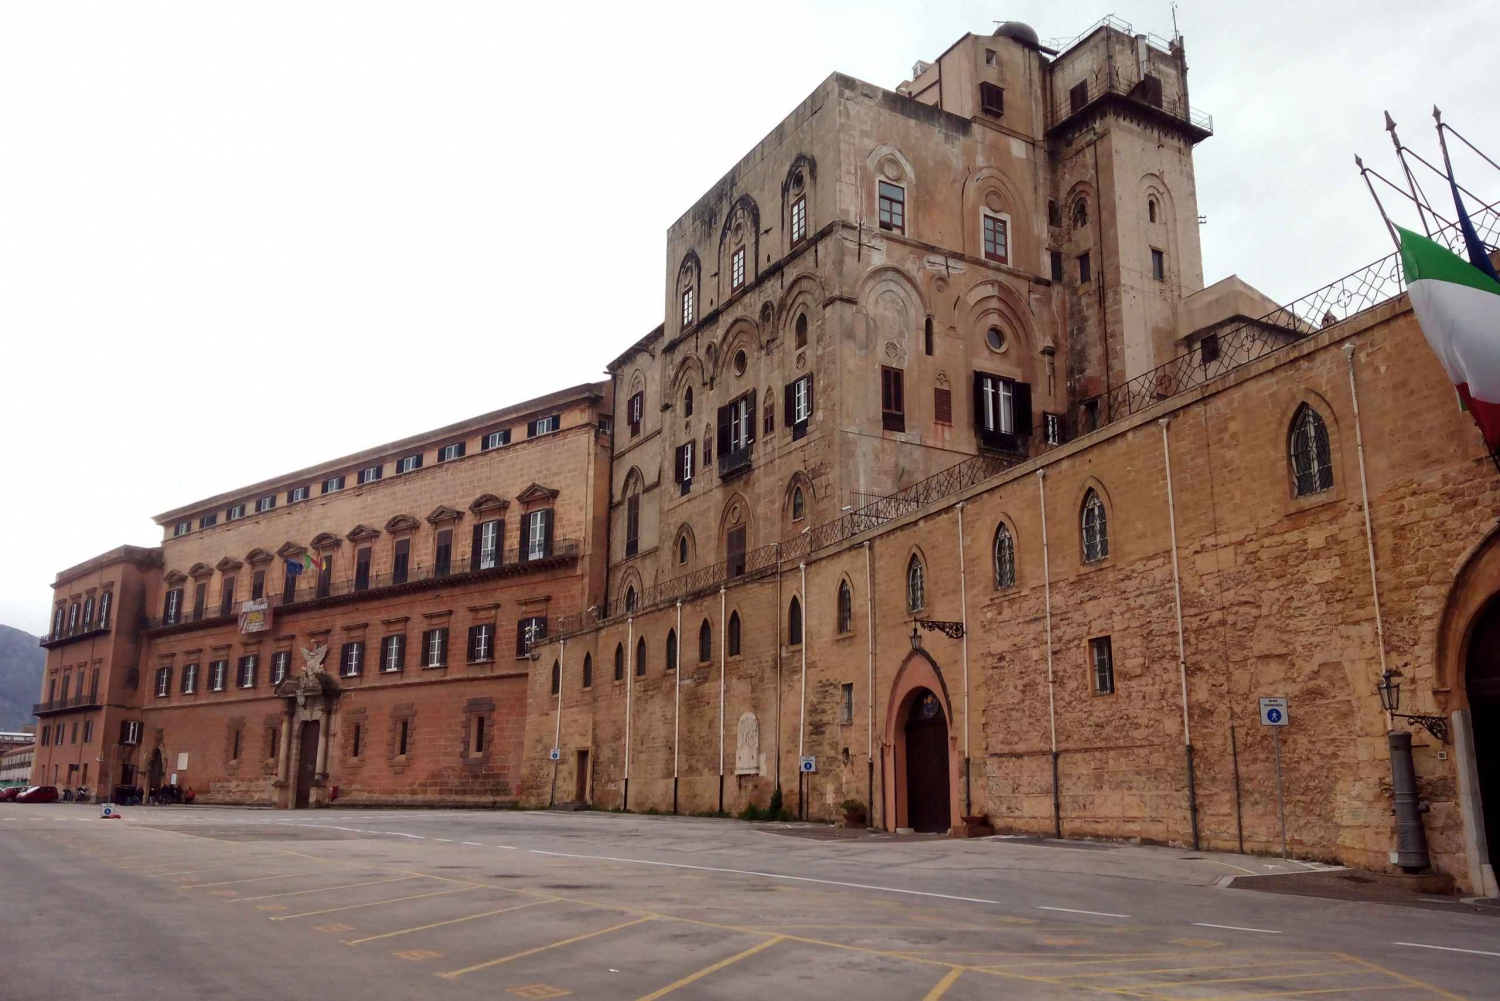 Palermo: Ingresso para o Palácio Normando e passeio pelo telhado de Palermo